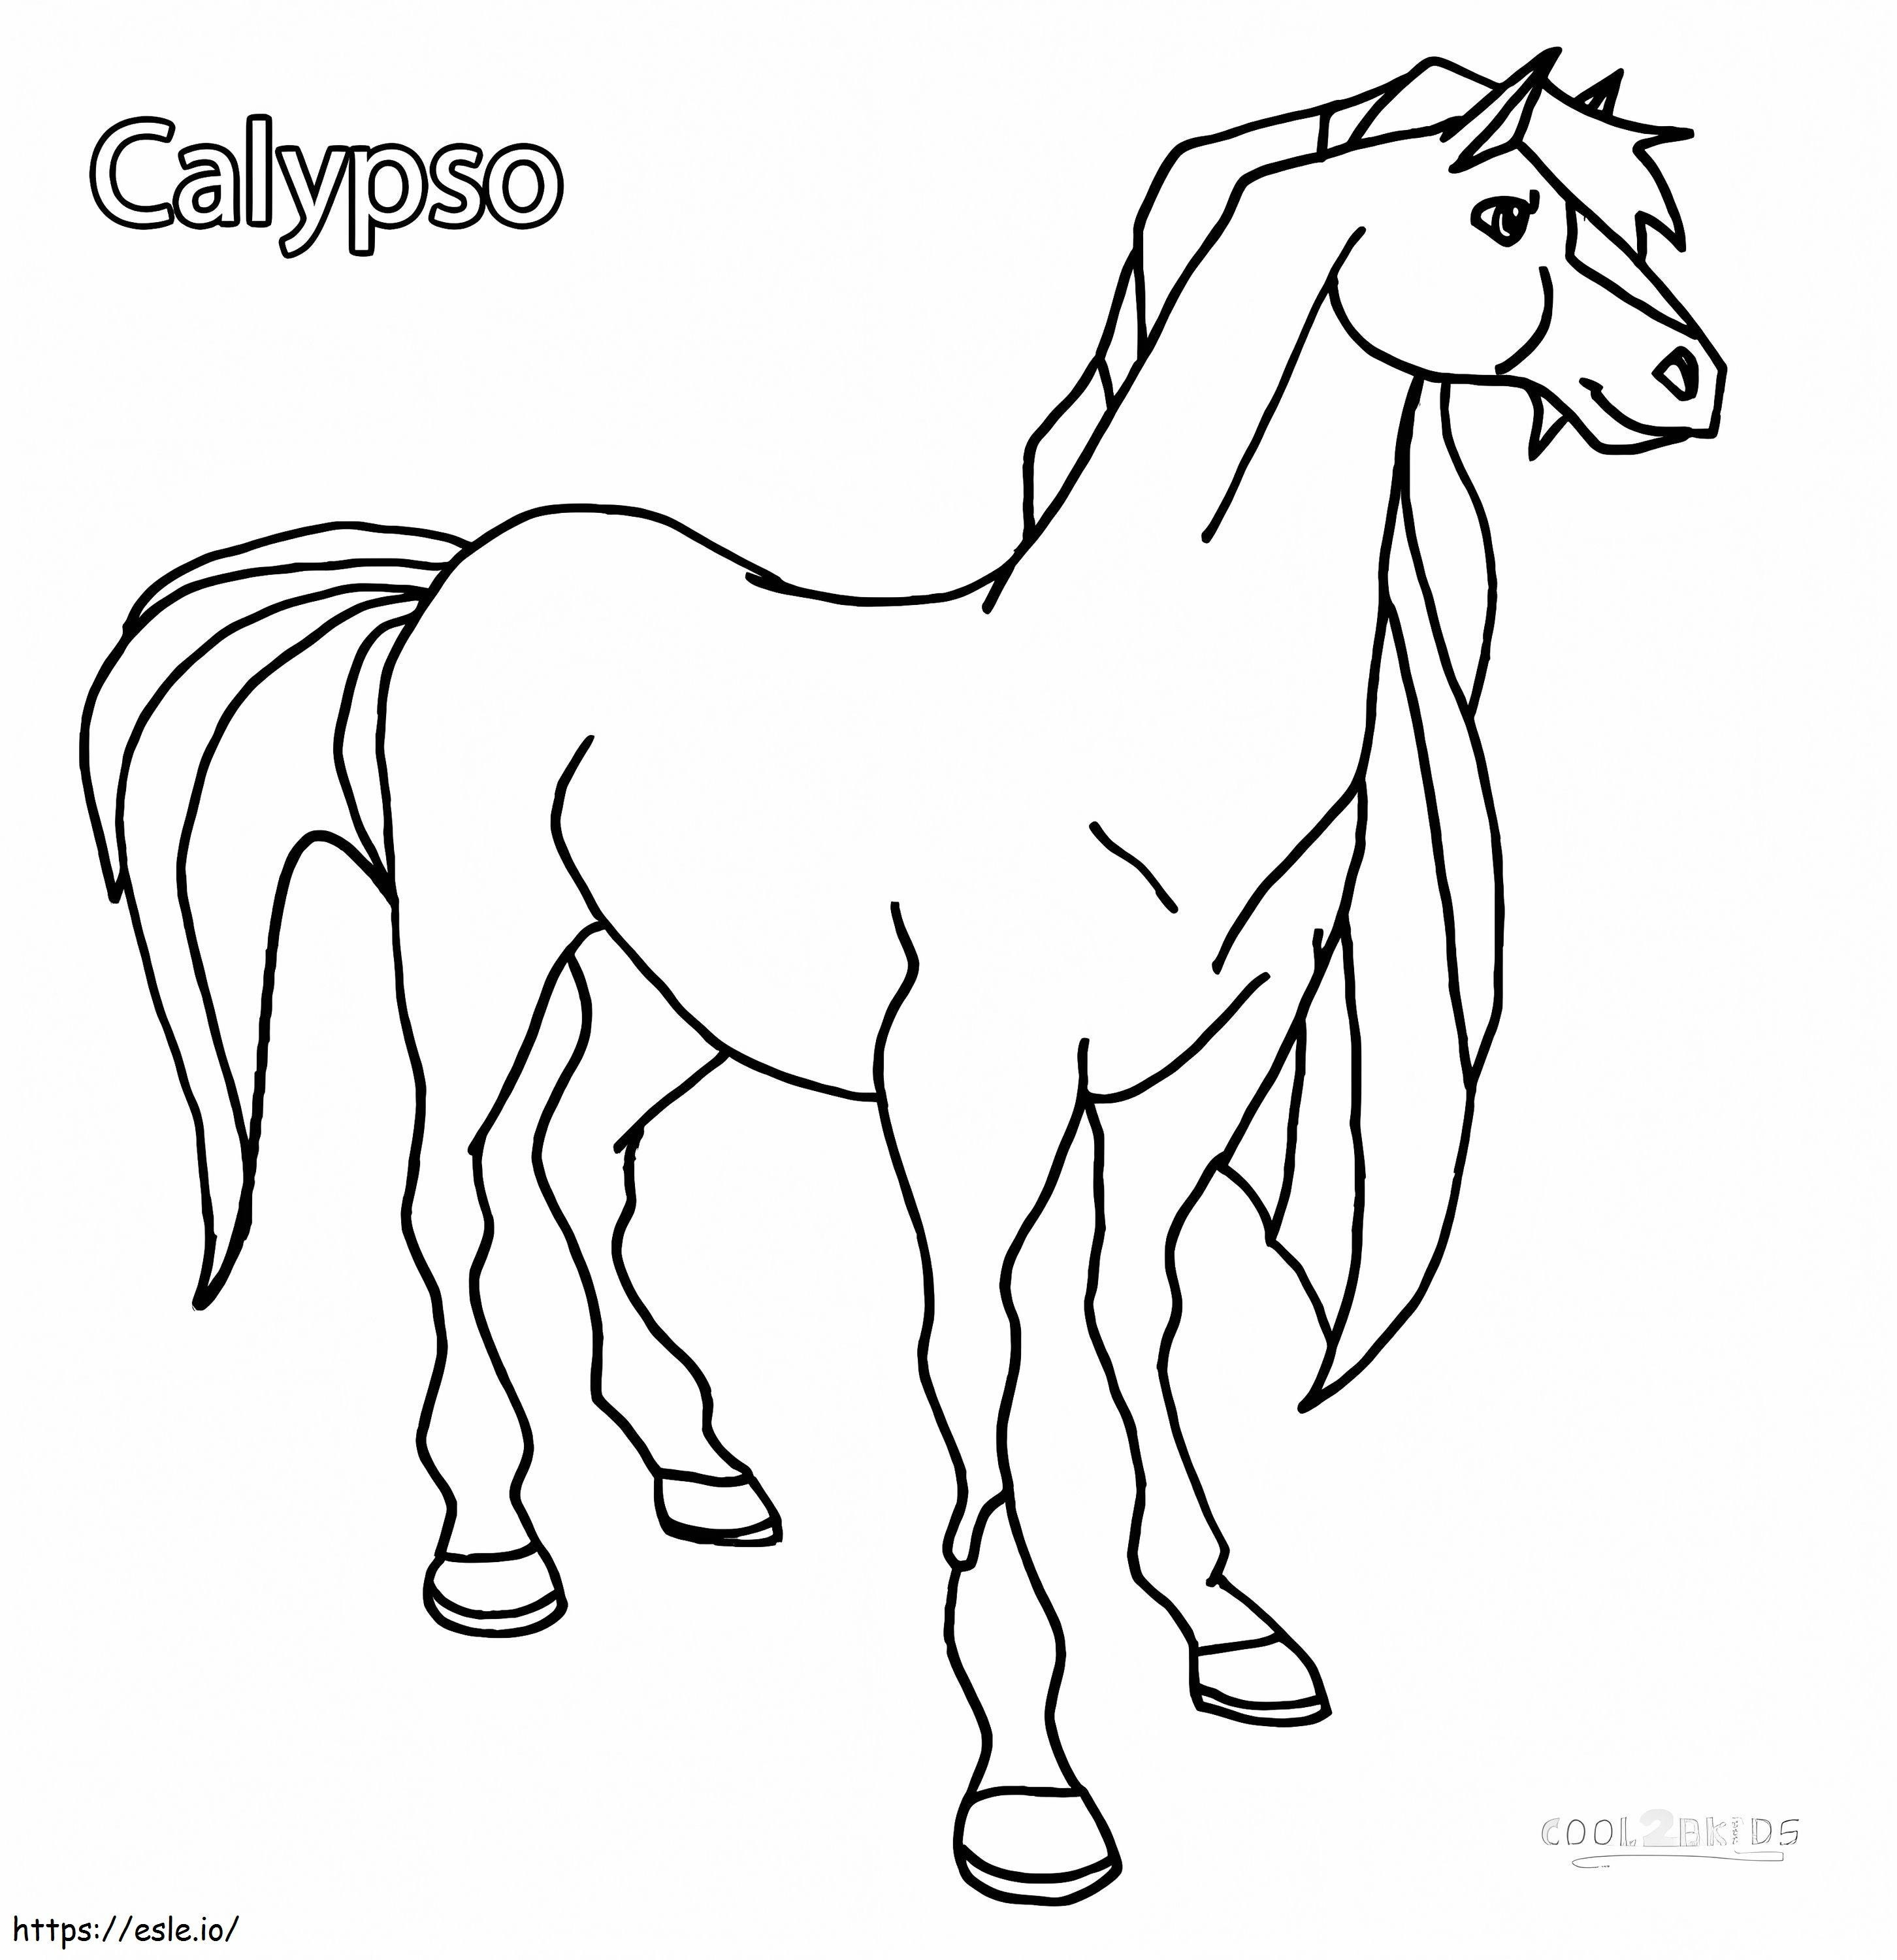 Coloriage Calypso de Horseland à imprimer dessin